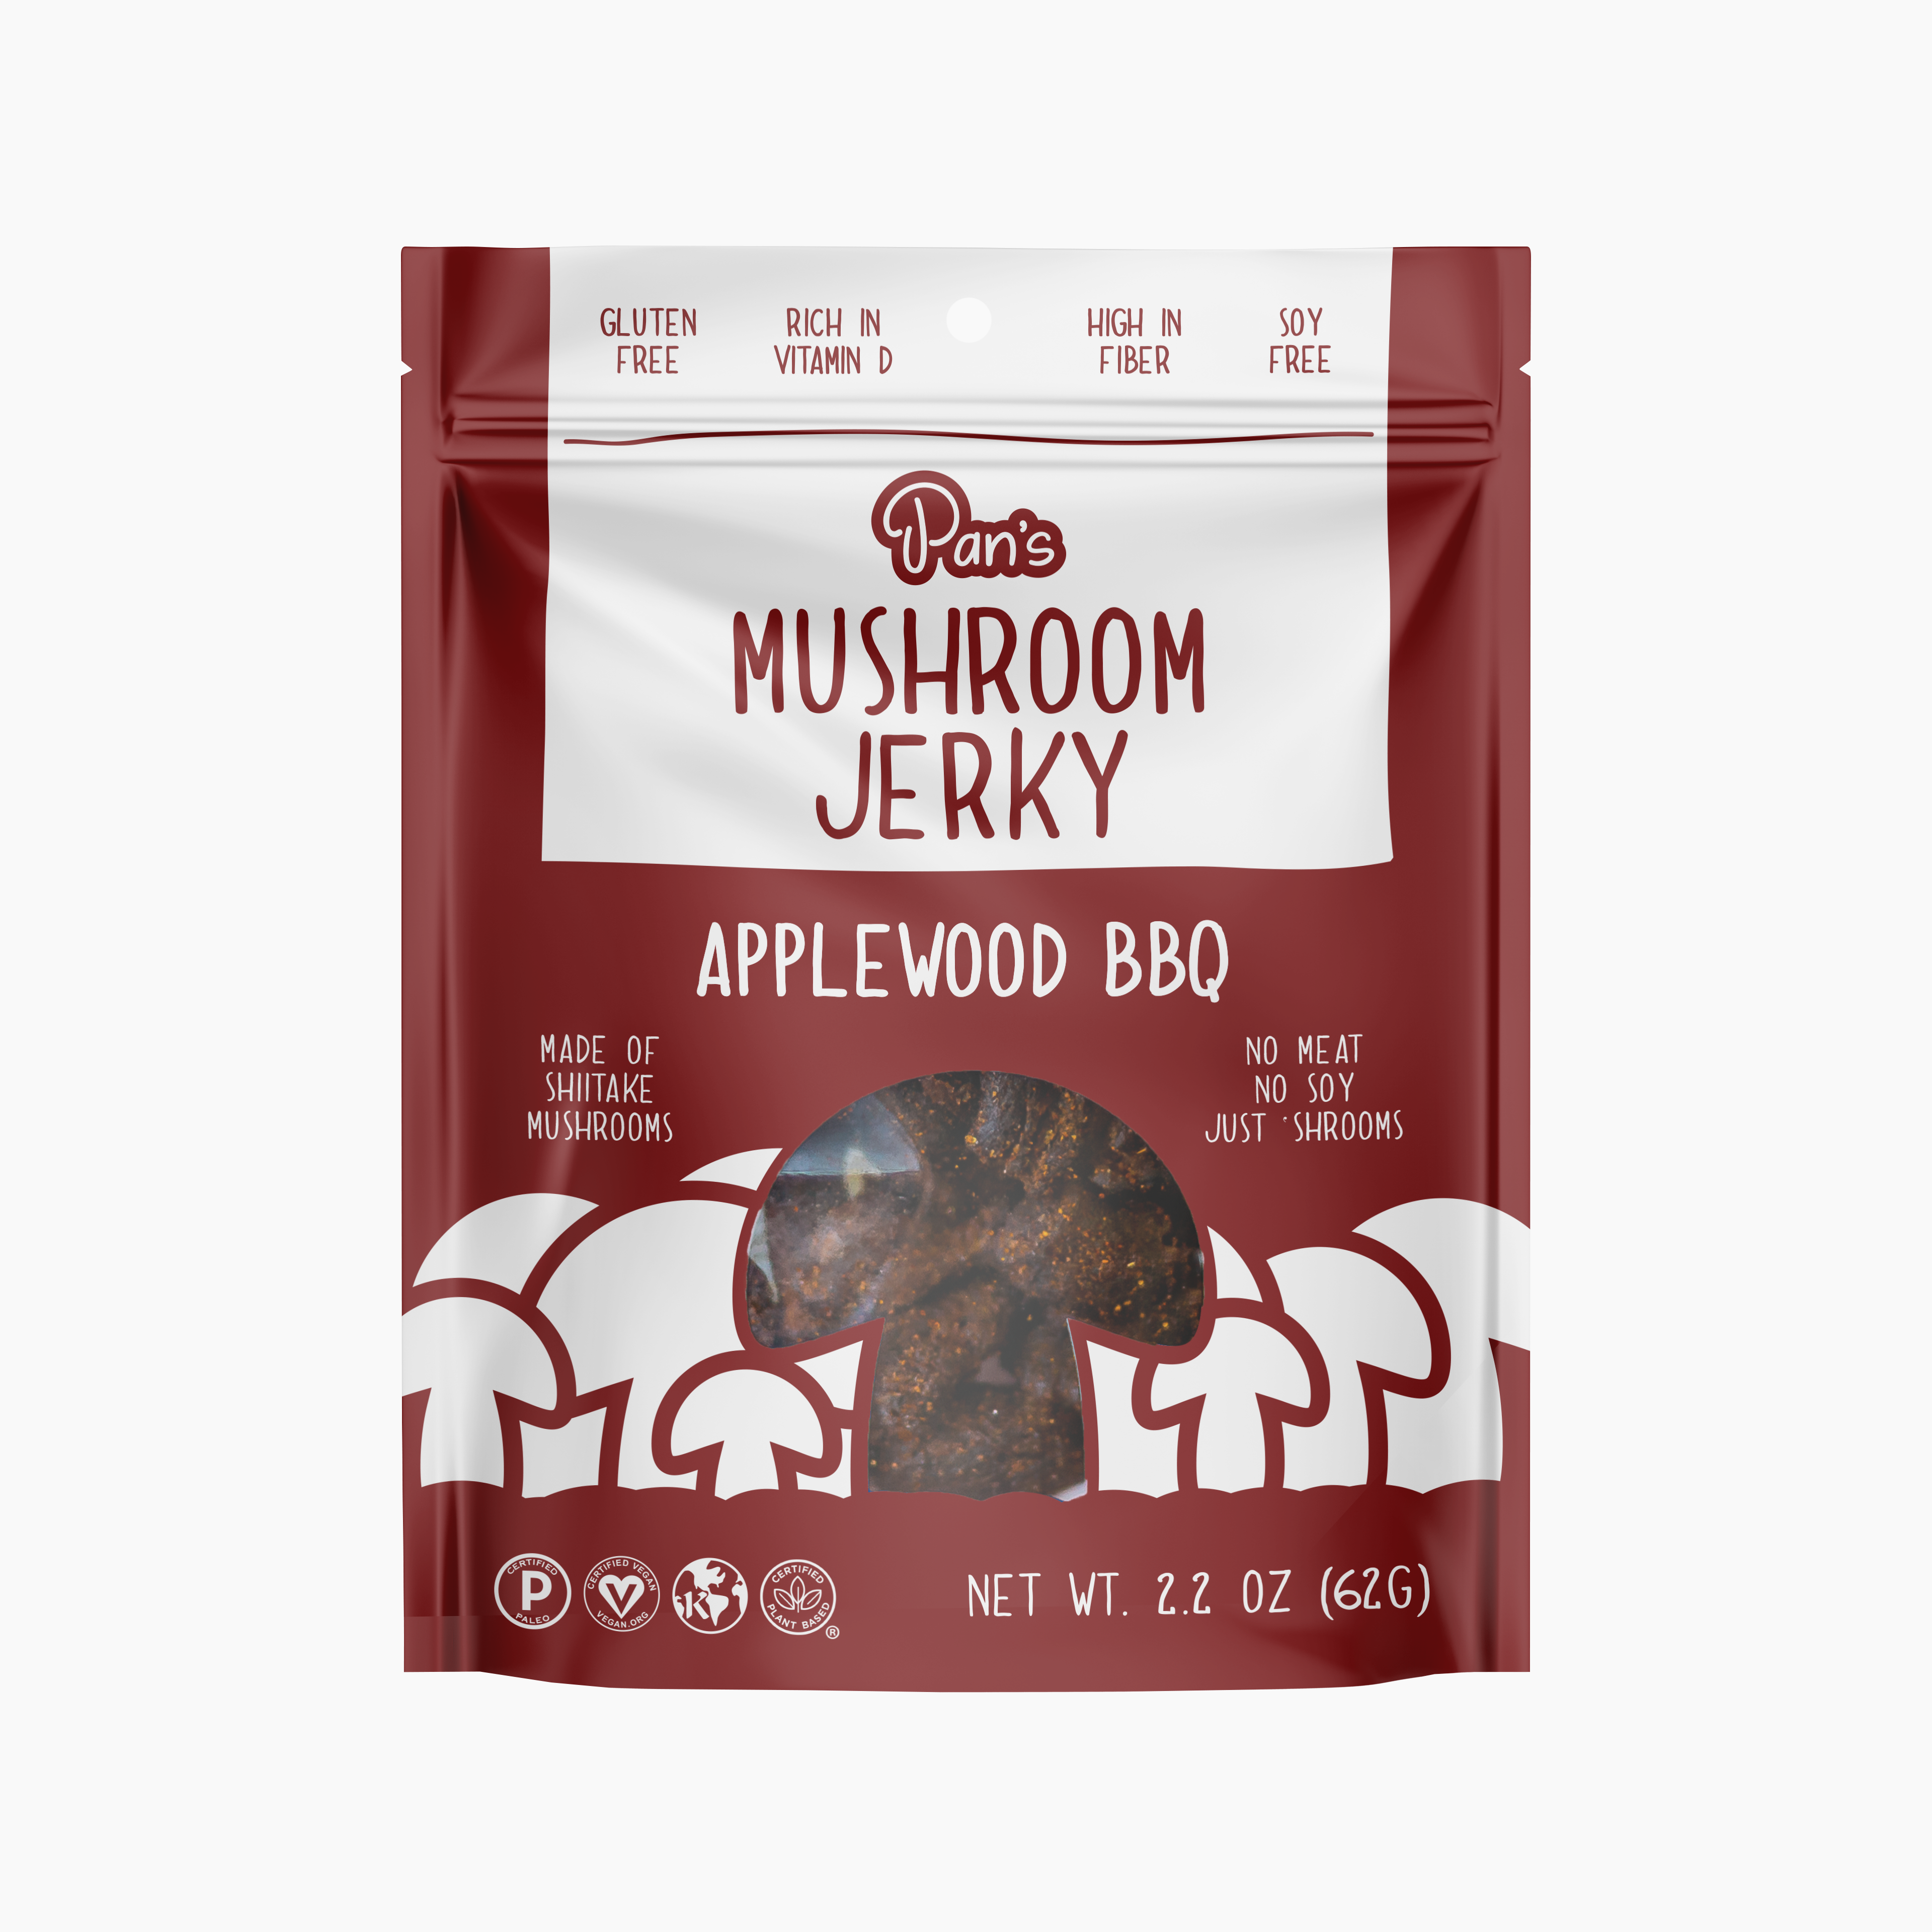 Applewood BBQ Mushroom Jerky